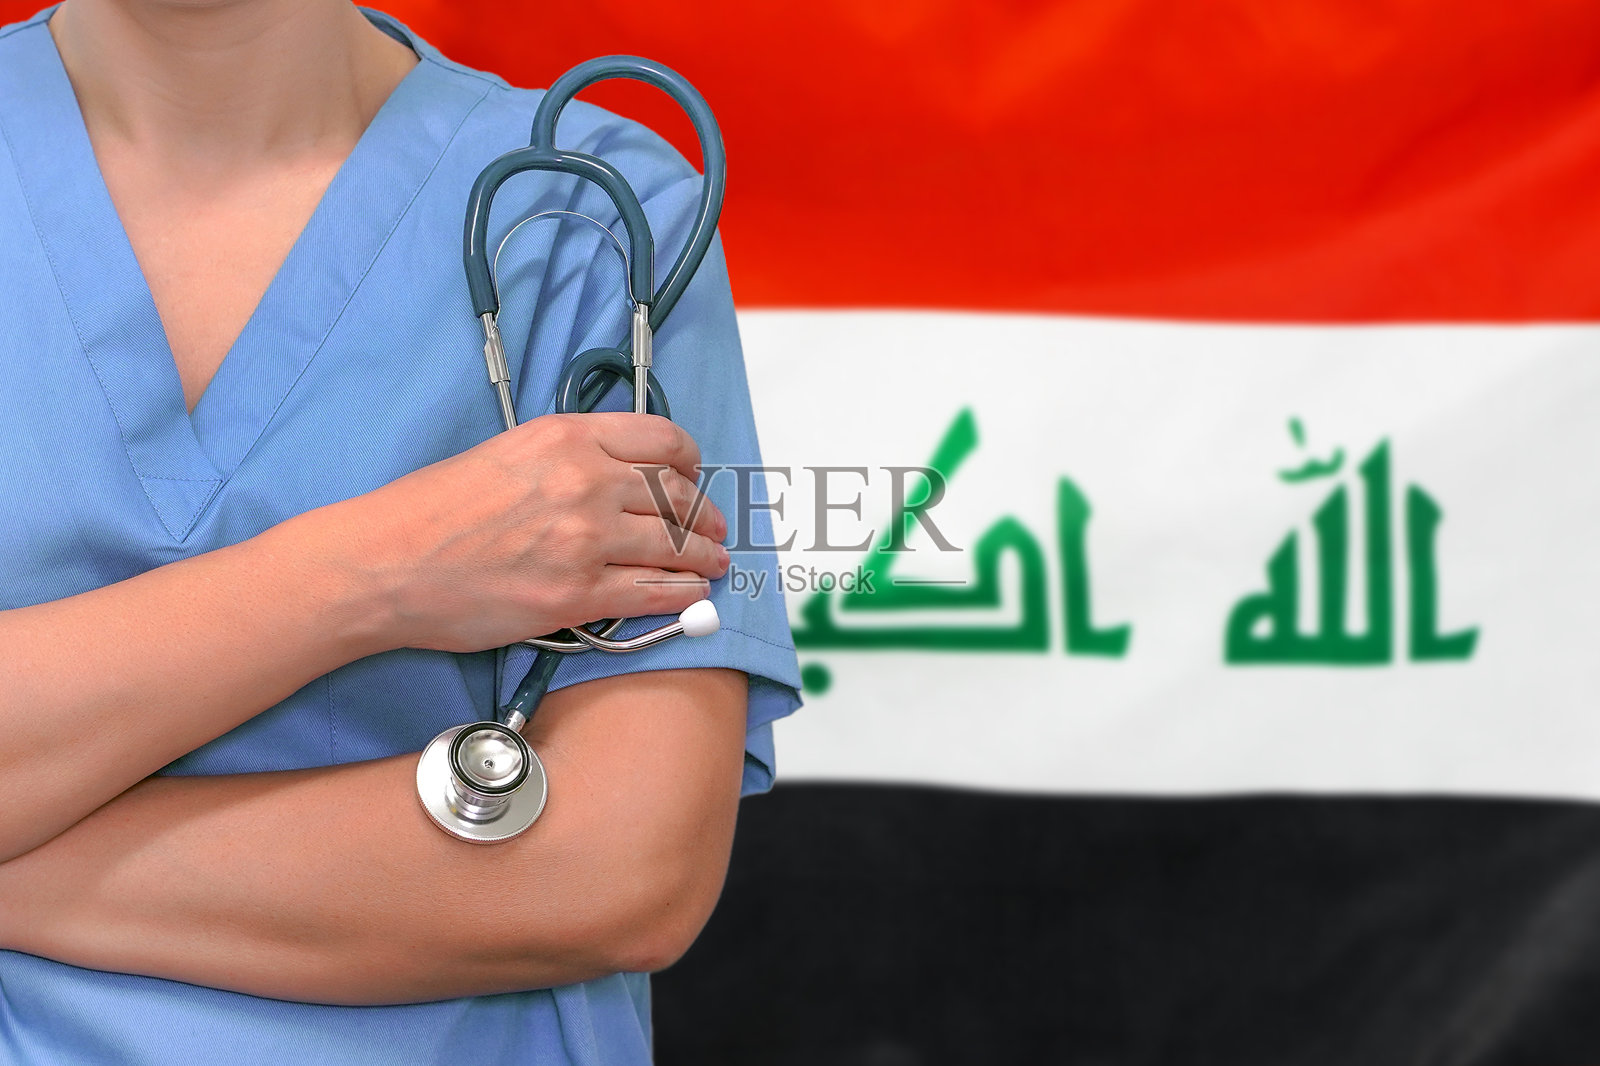 女外科医生或女医生手持听诊器站在伊拉克国旗的背景上。伊拉克的保健、手术和医疗概念照片摄影图片